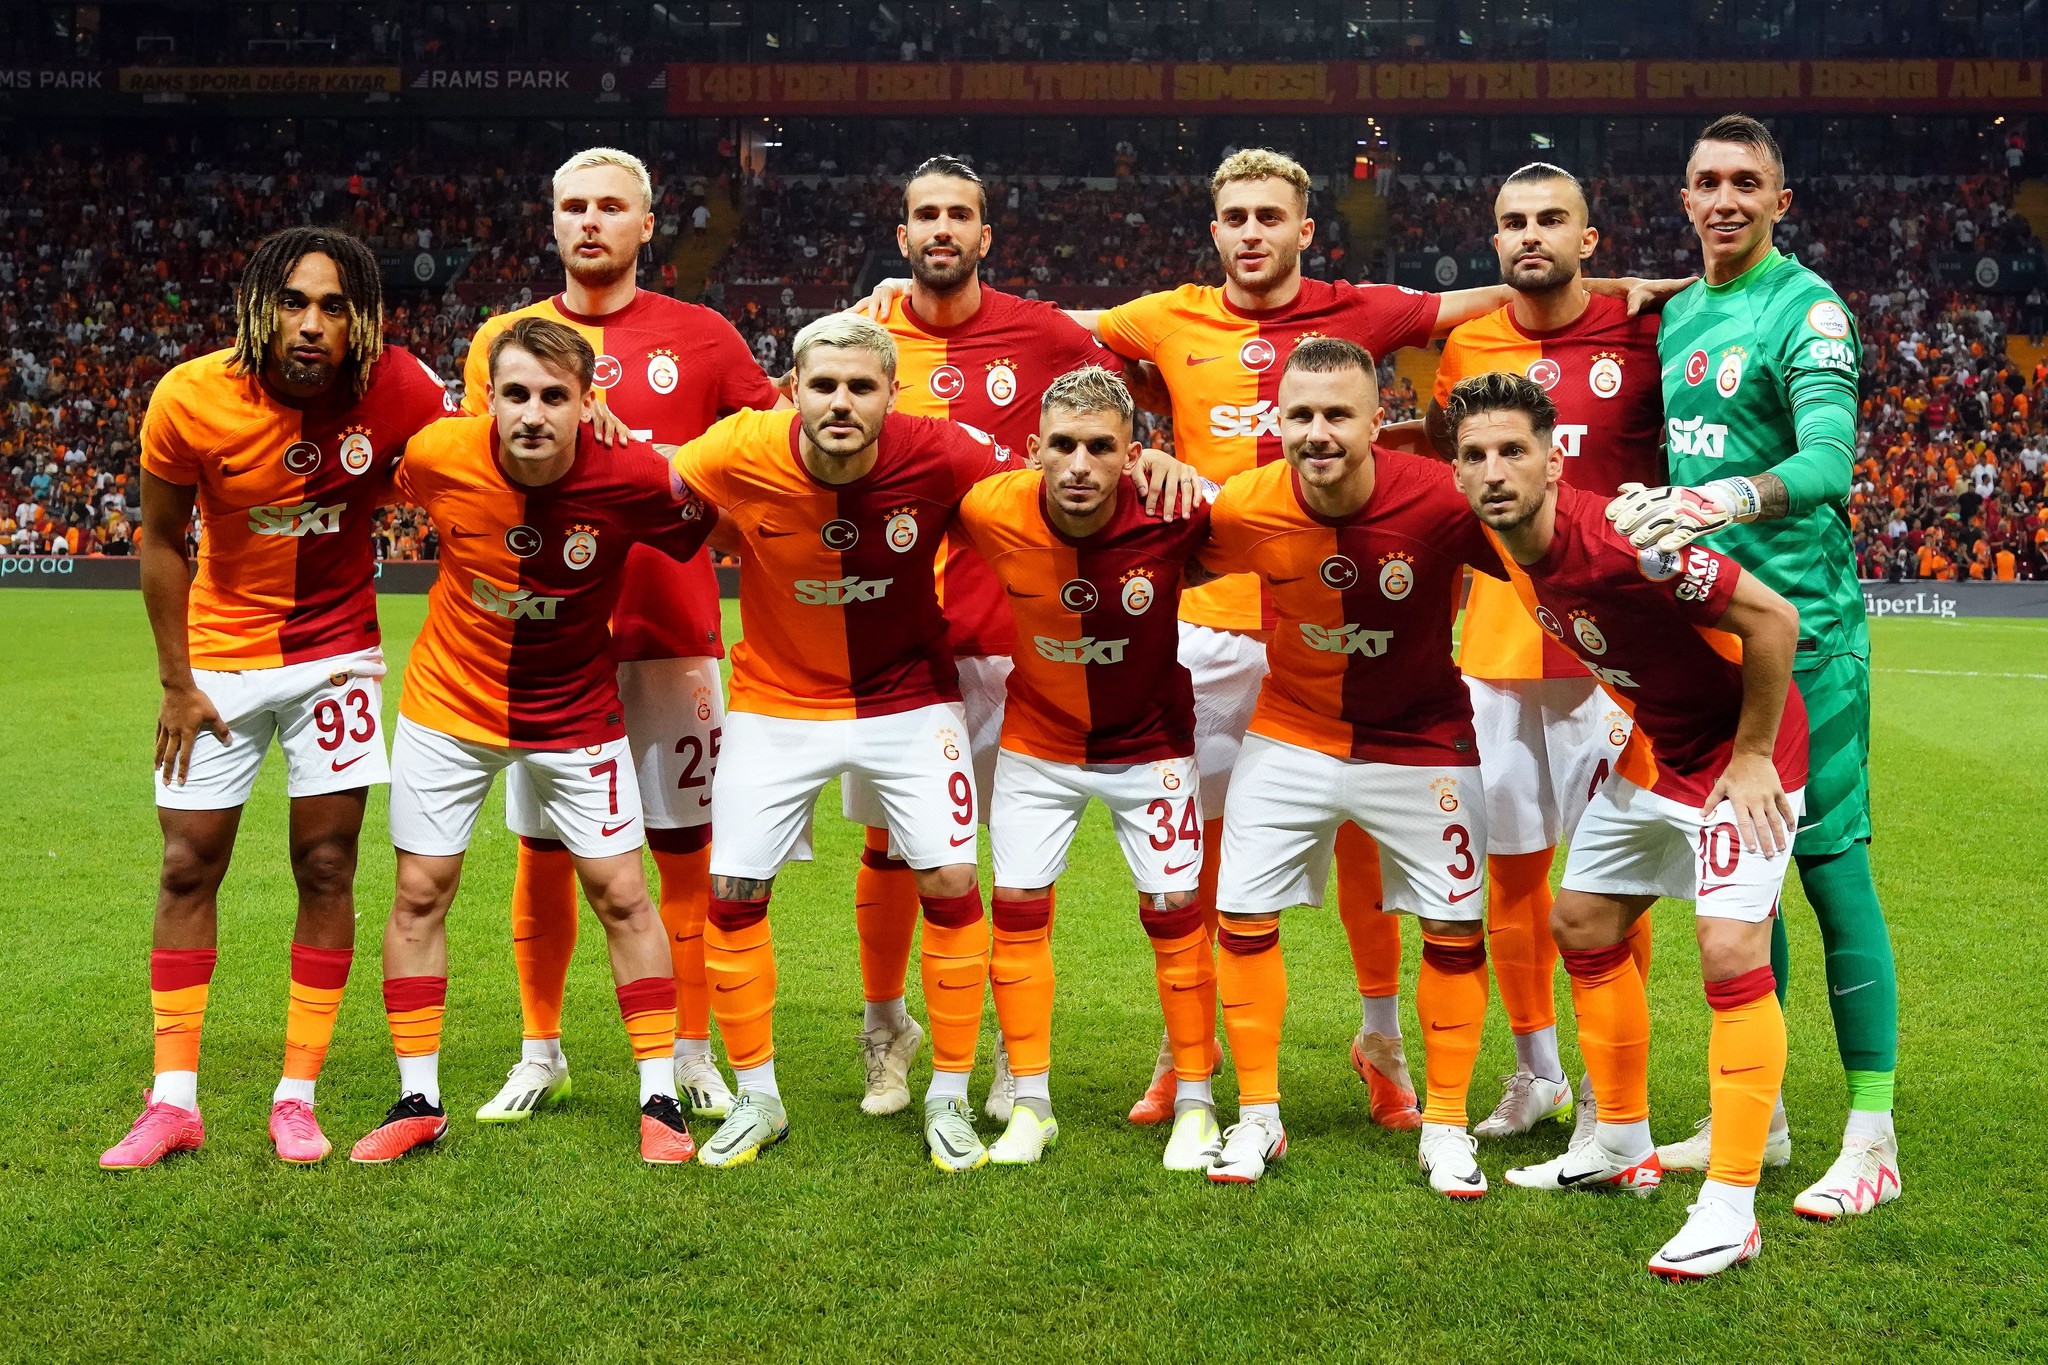 Transferde sezon finali! Galatasaray ve Fenerbahçe bu kez çok sürpriz bir yıldız için karşı karşıya